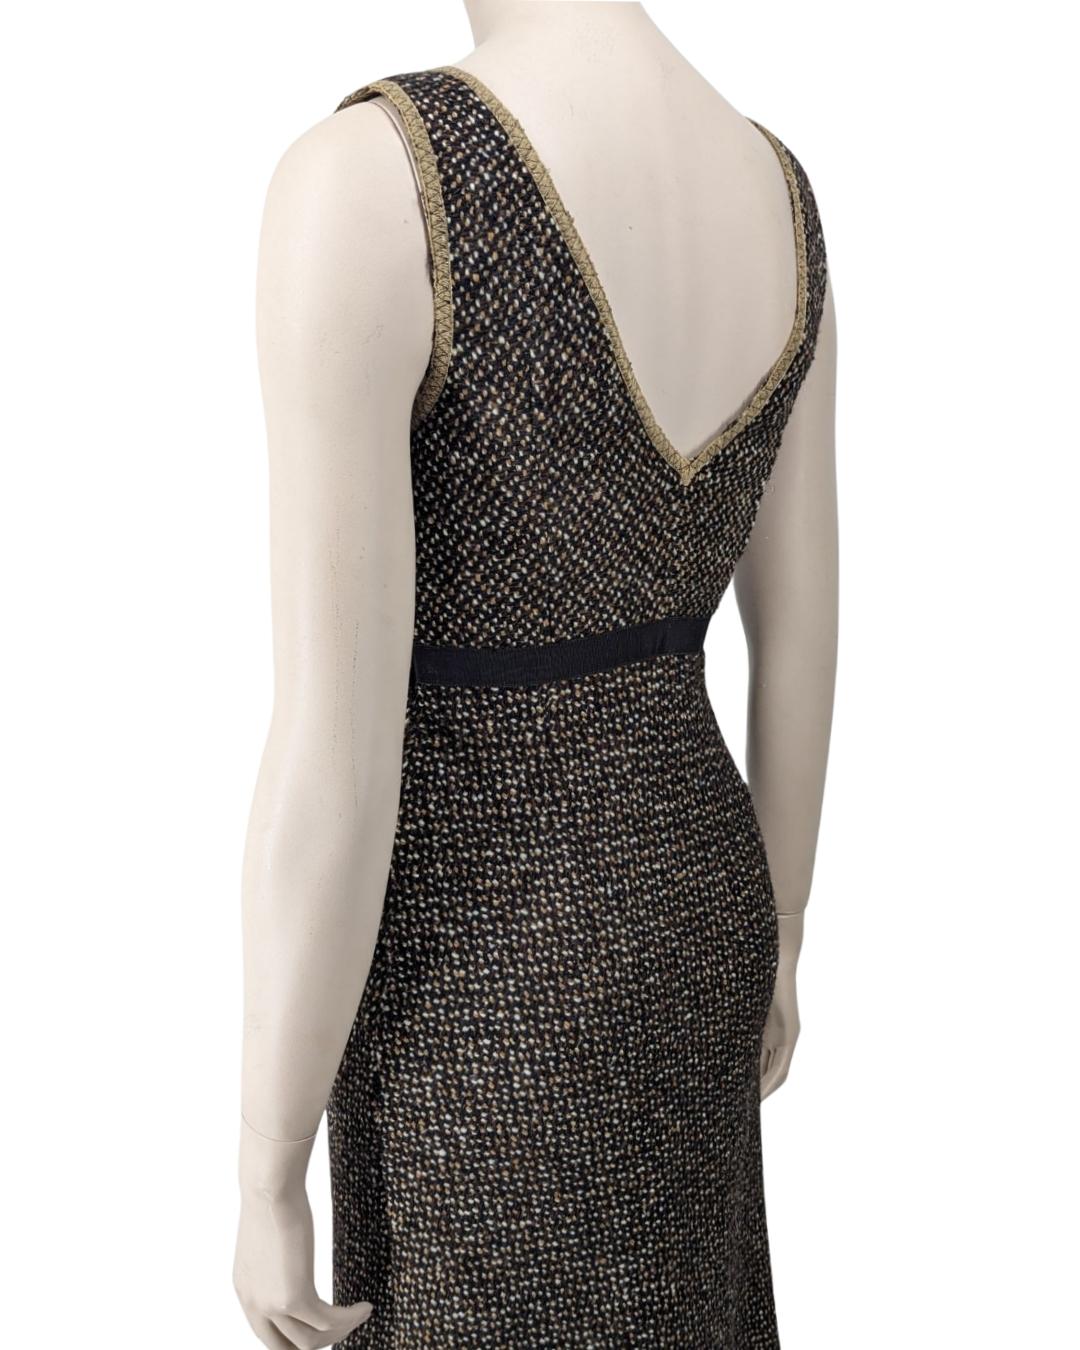 Prada Fall 2000 Runway Tweed Dress by Miuccia Prada For Sale 4